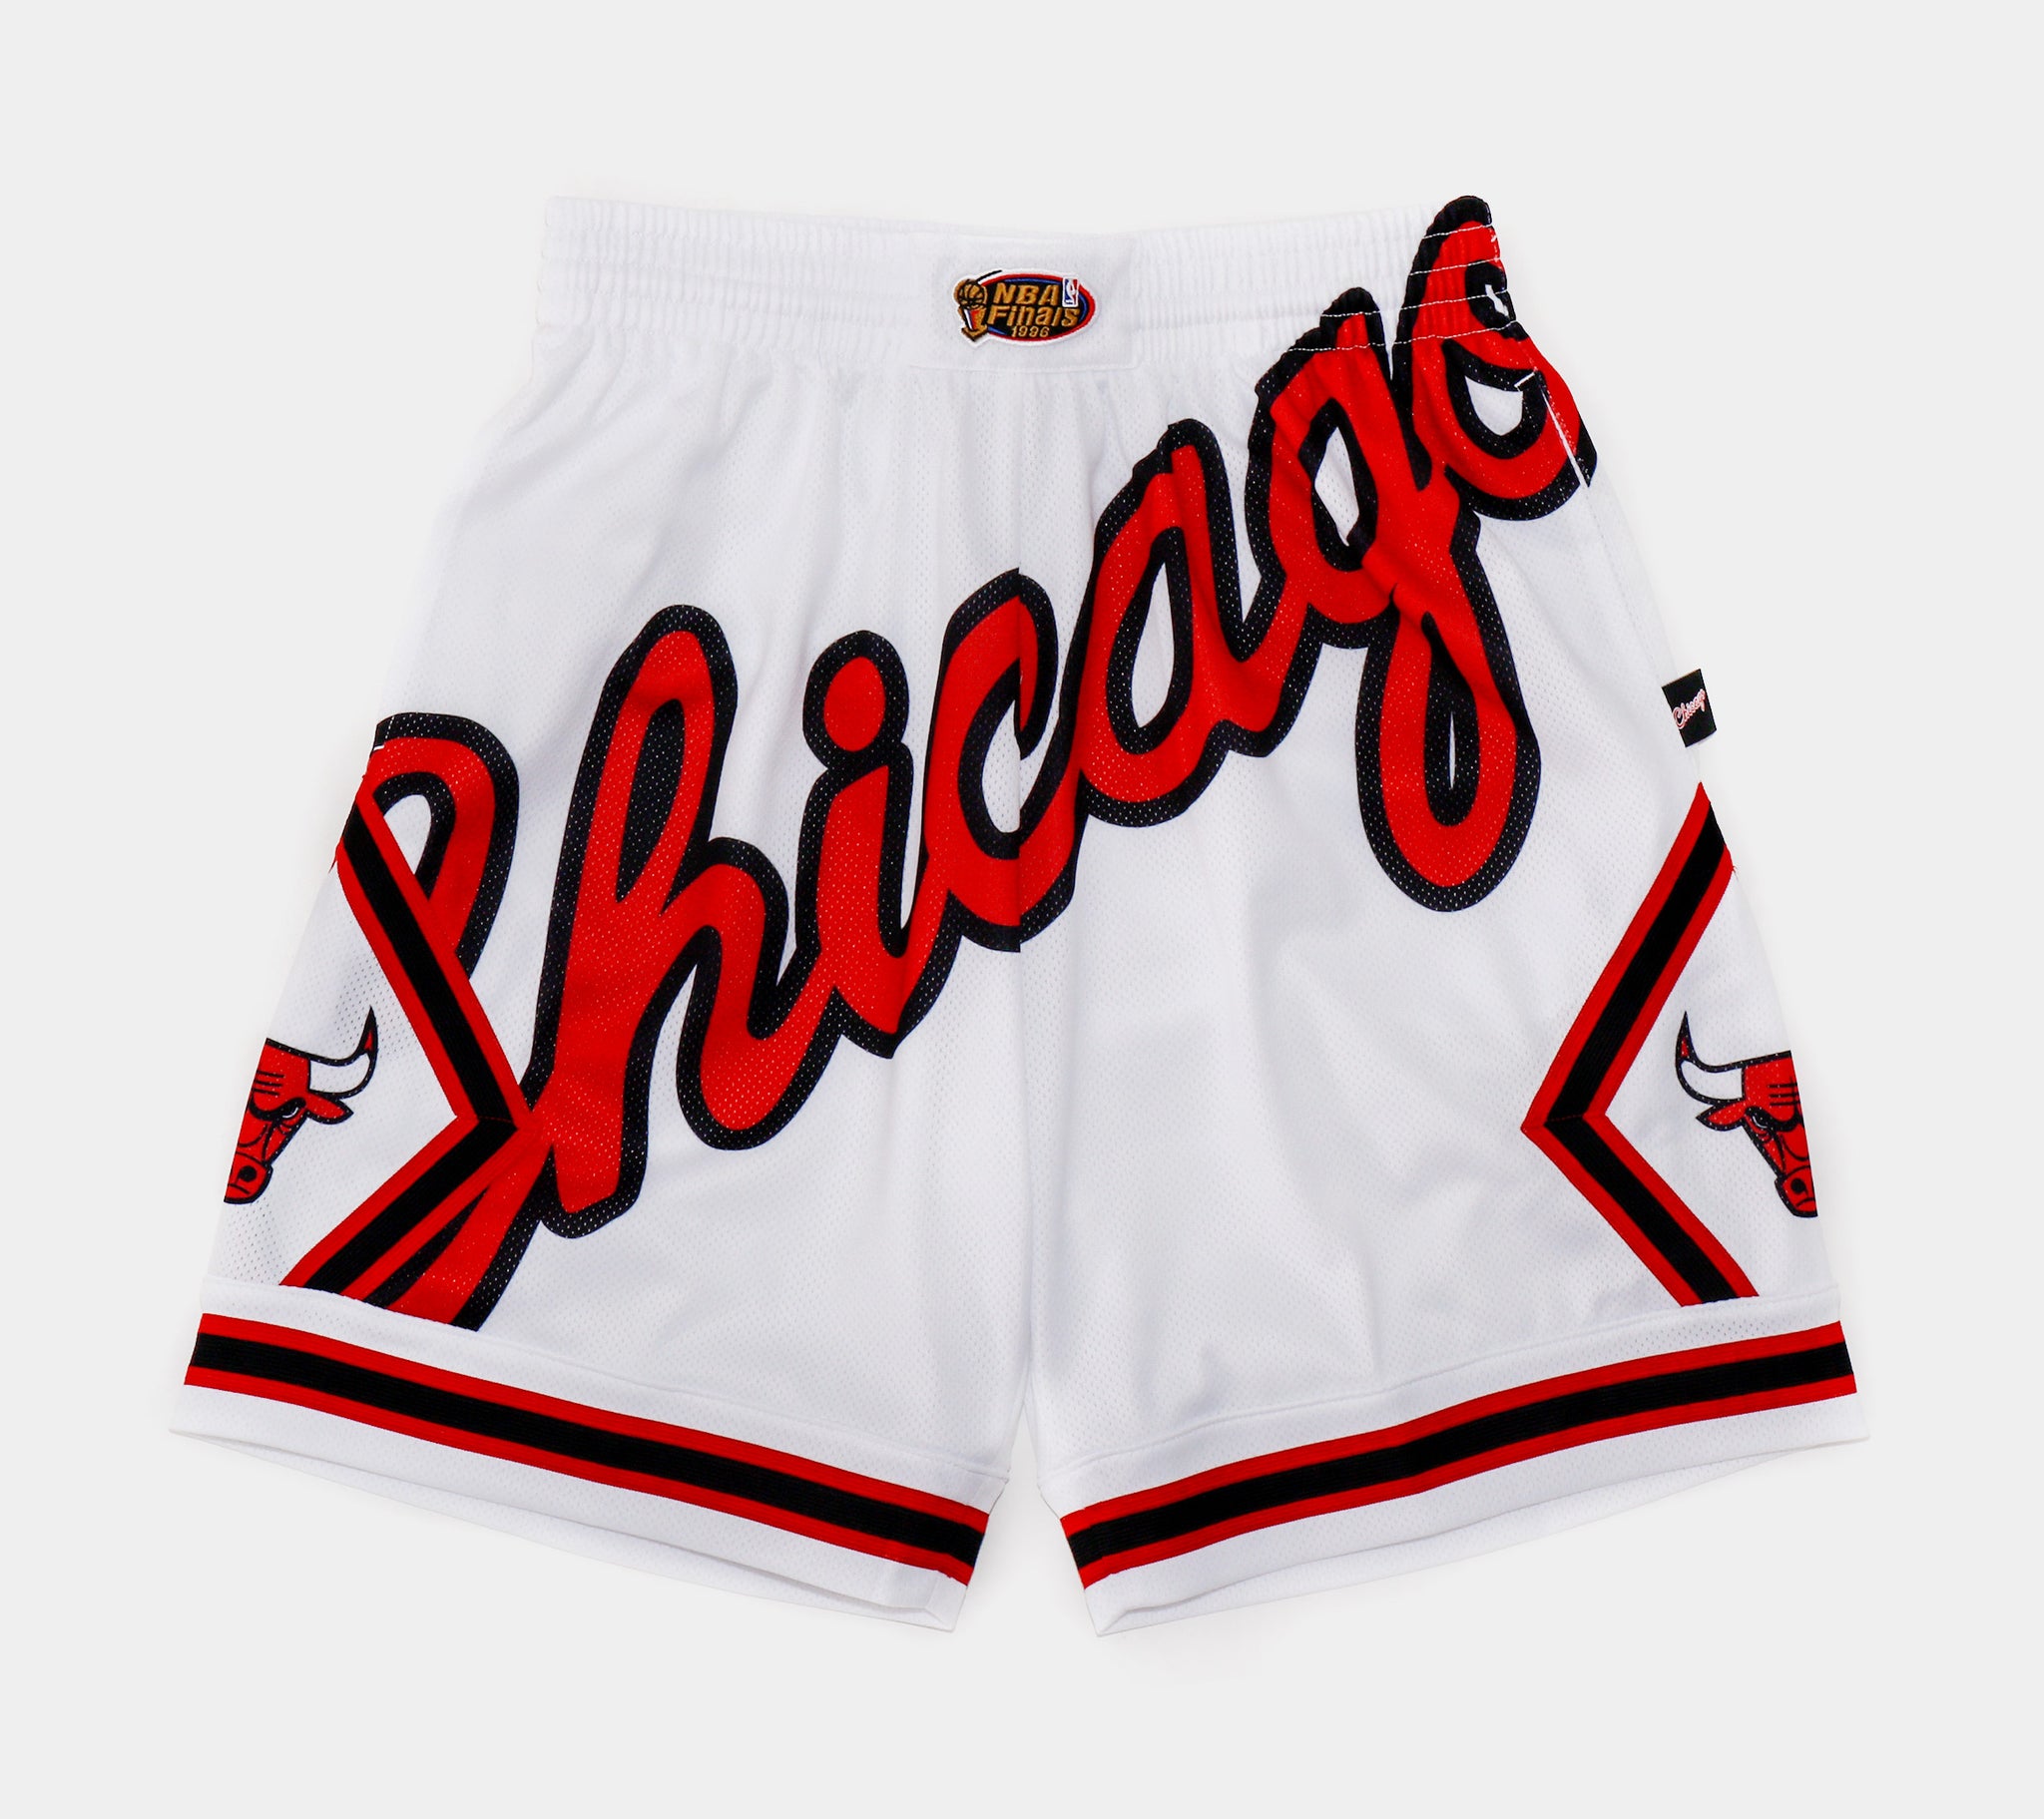 Chicago Bulls Shorts, Bulls Basketball Shorts, Running Shorts